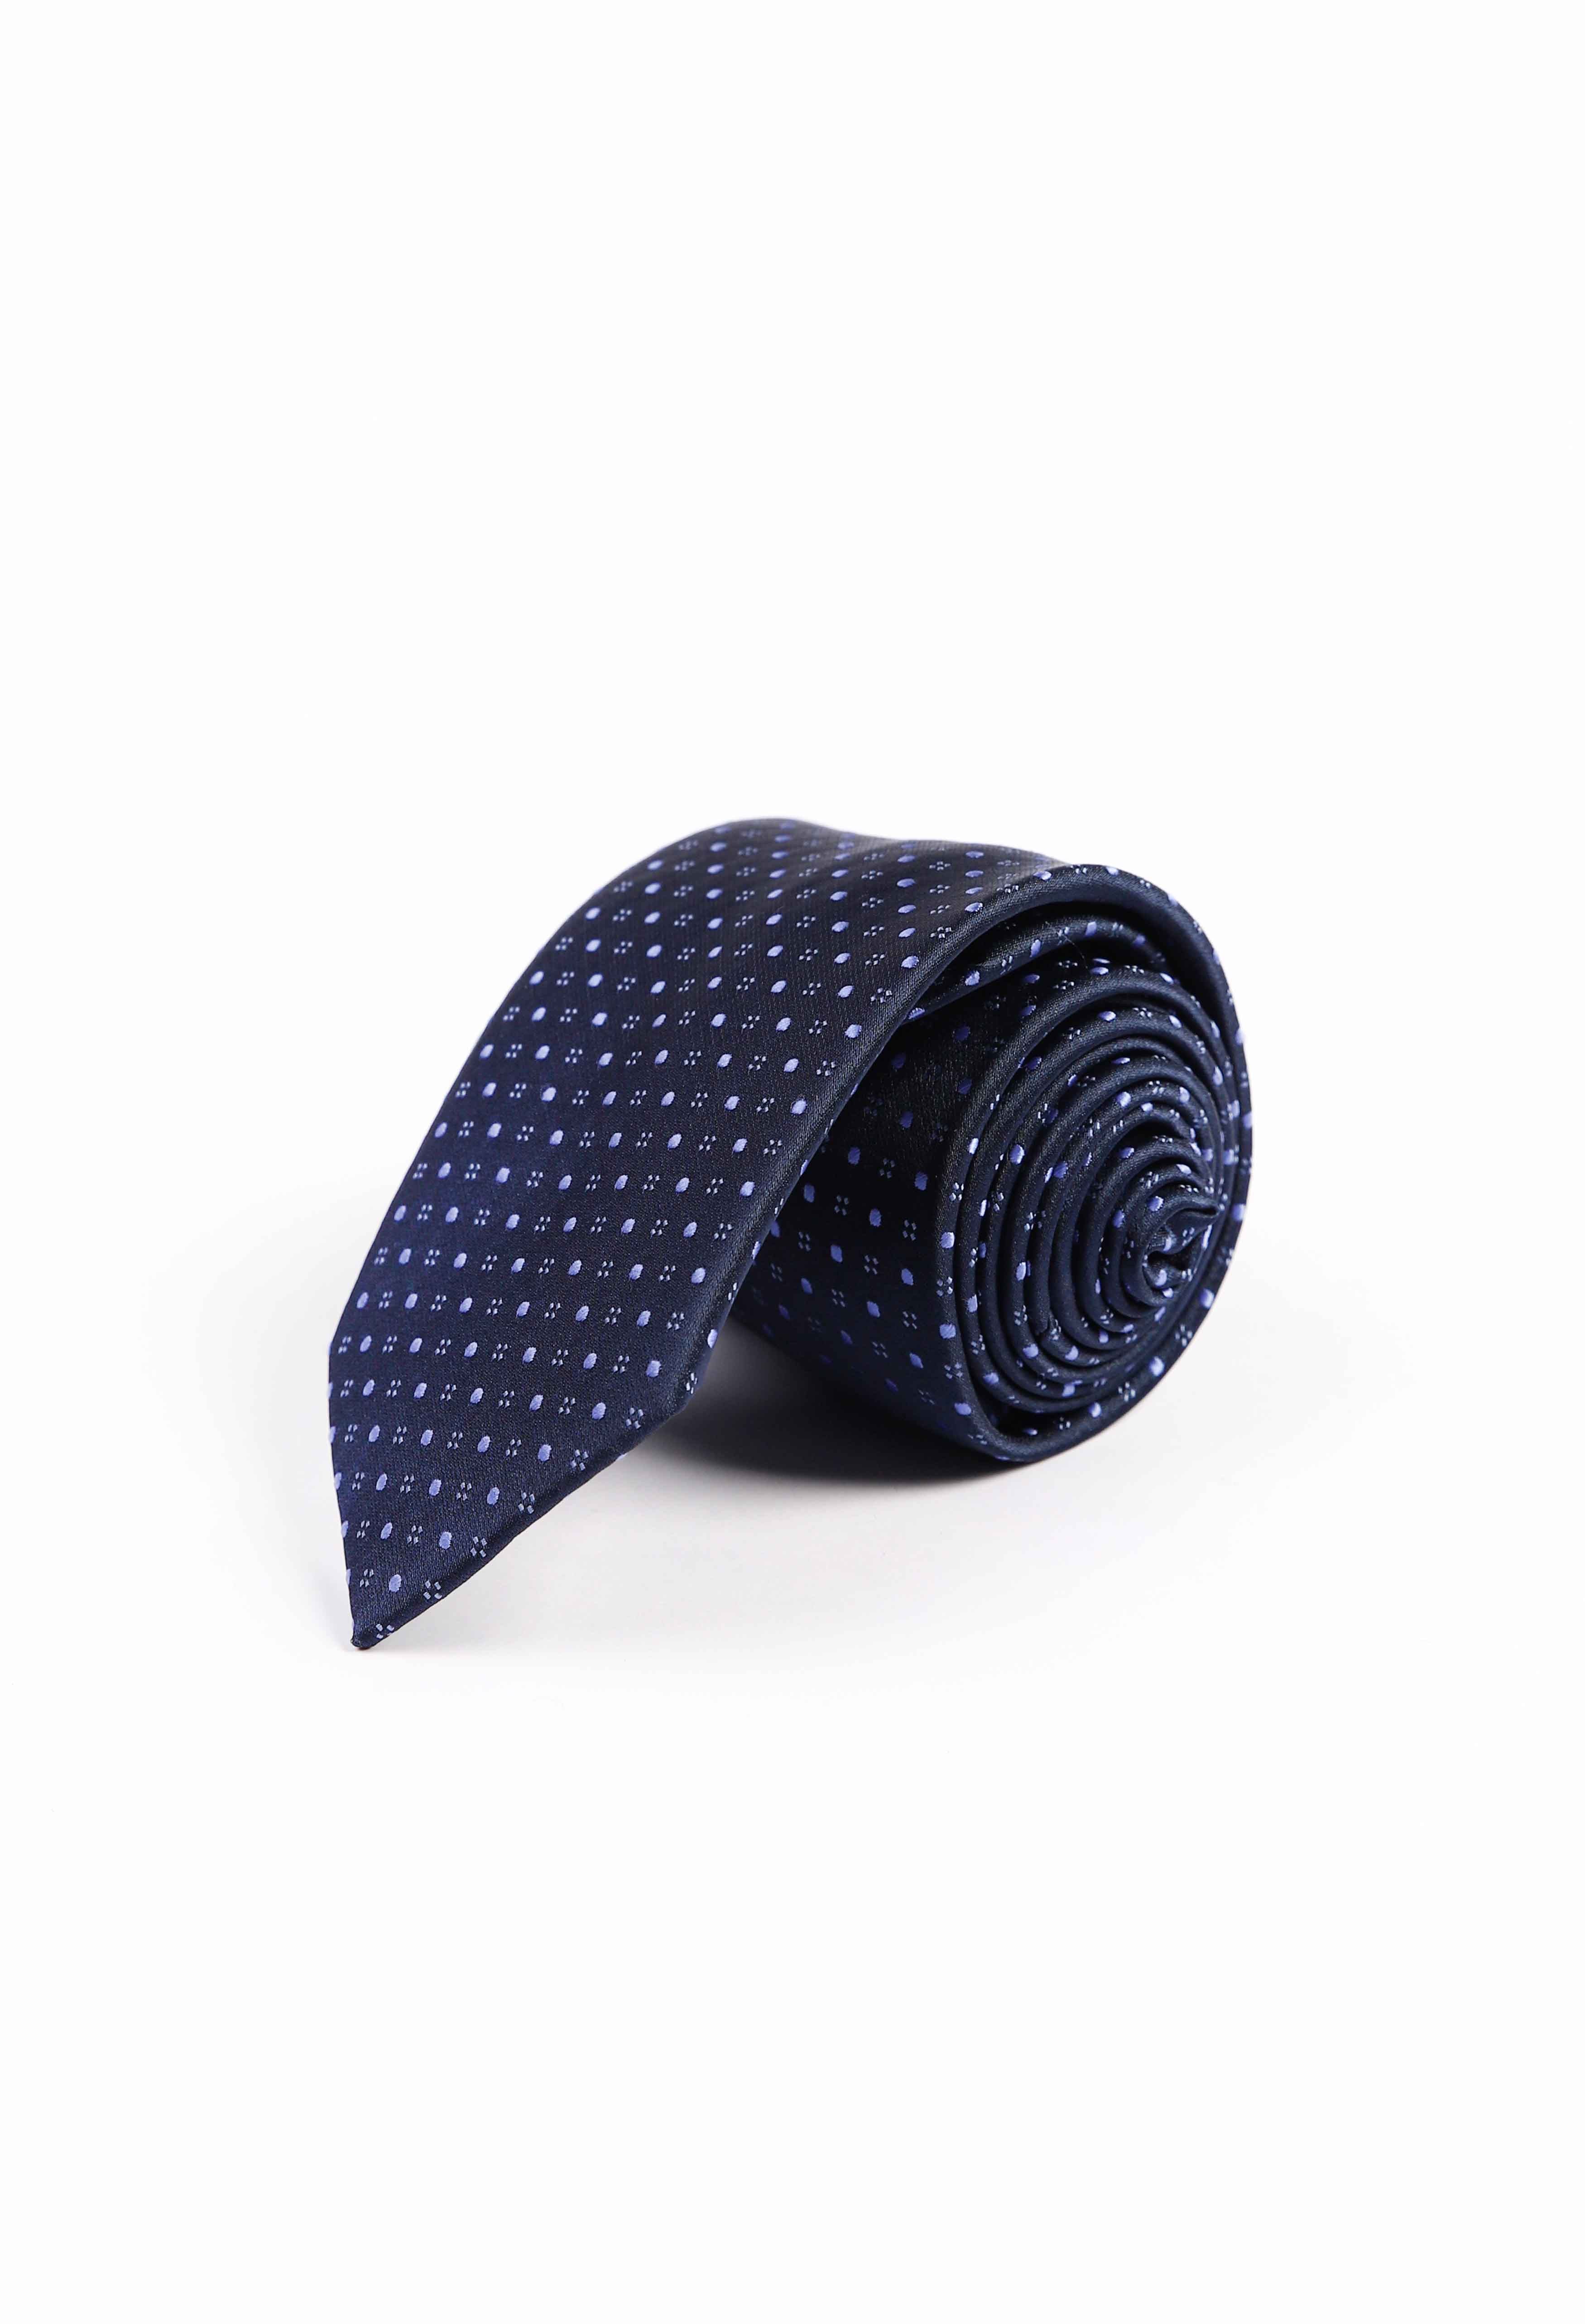 Kansas City Blue Pin Dot Tie (TIE-000024)